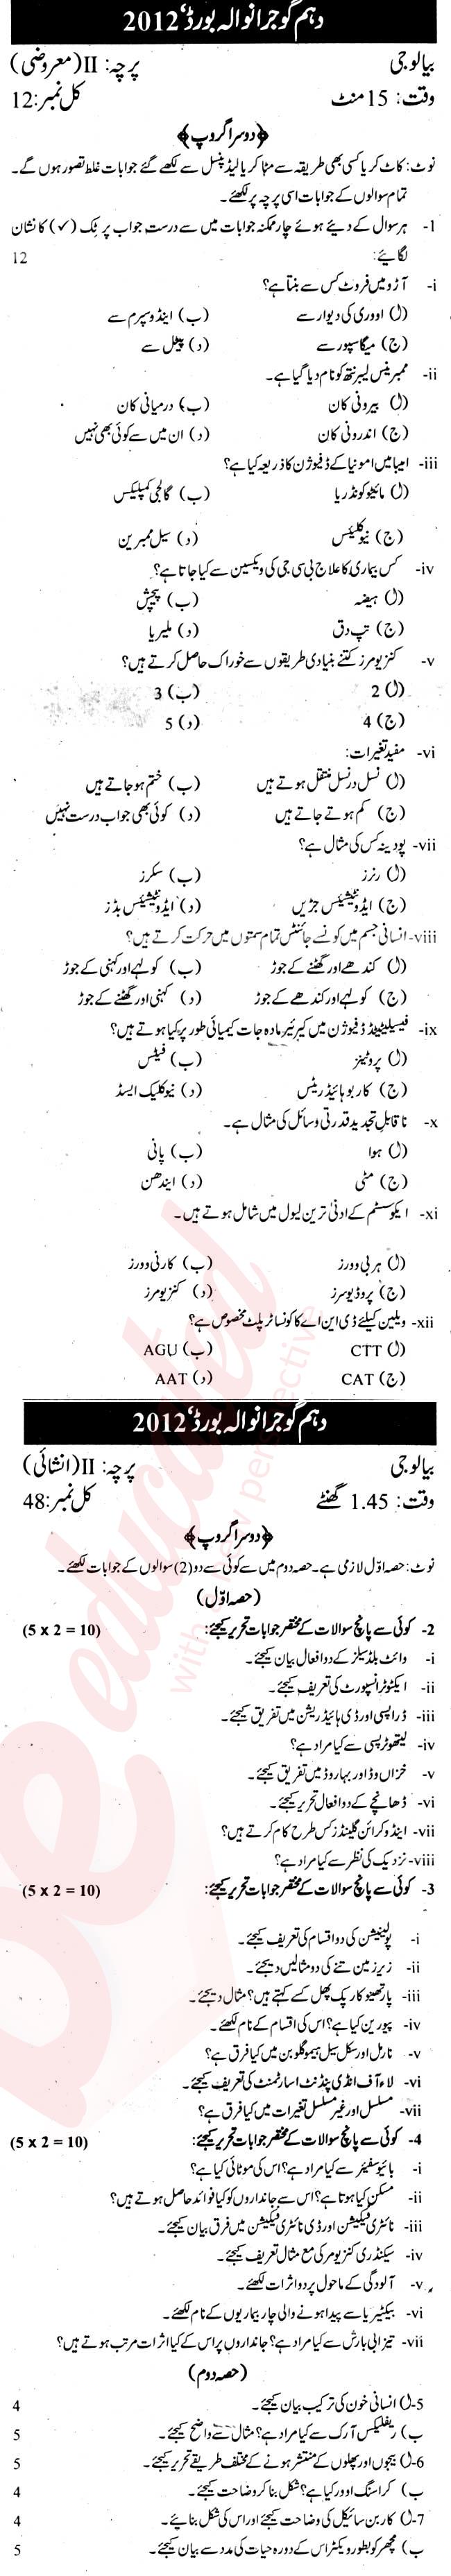 Biology 10th Urdu Medium Past Paper Group 2 BISE Gujranwala 2012